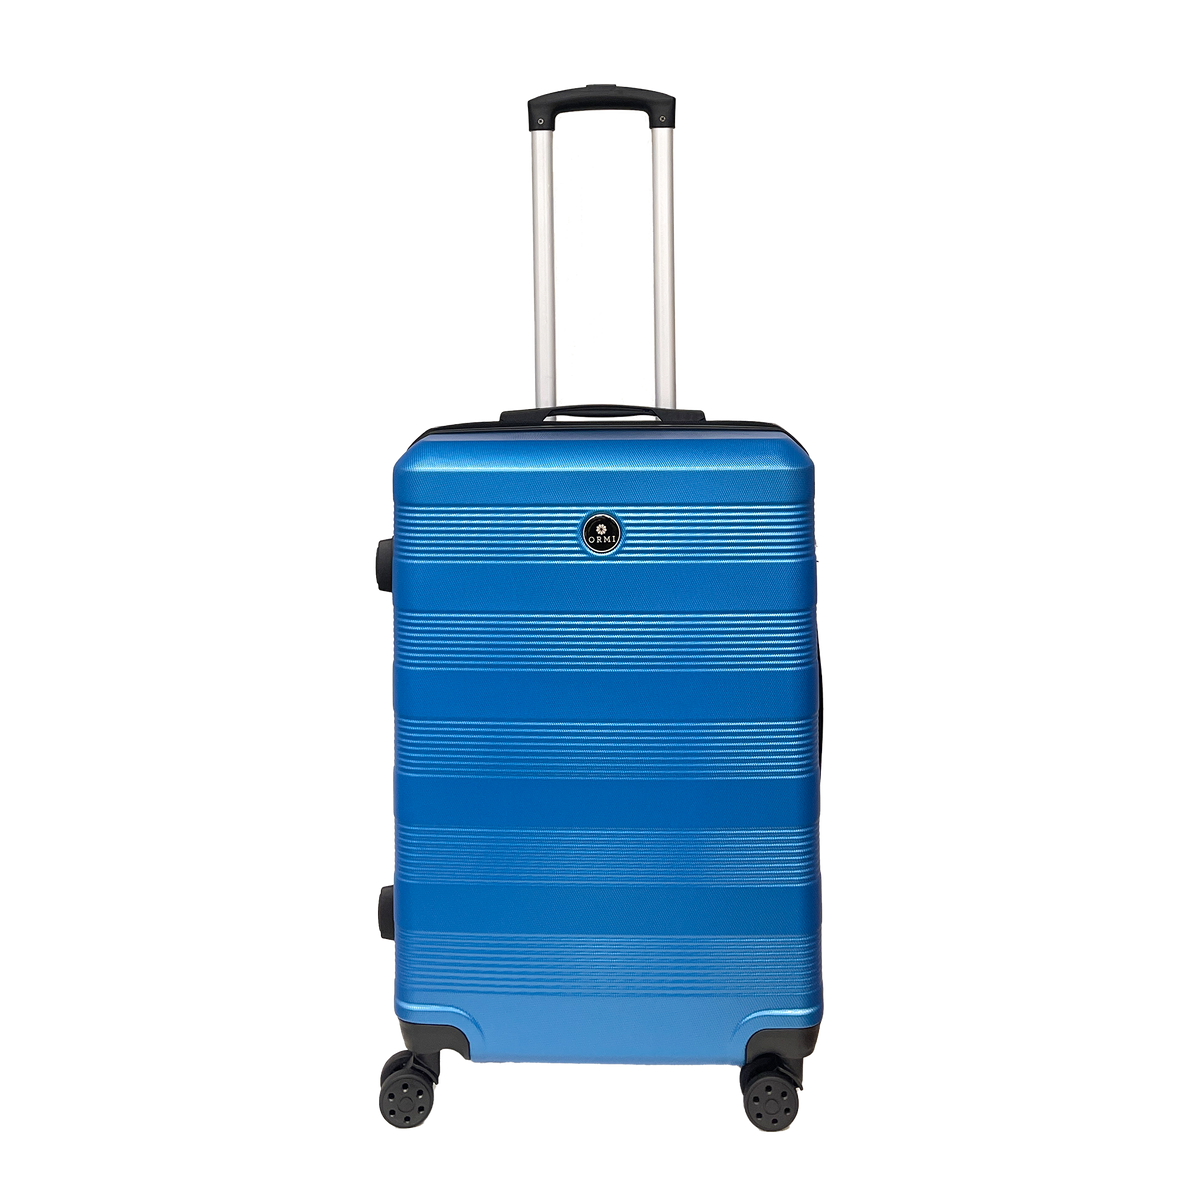 Az Ormi Tenwave közepes méretű kemény trolley bőröndje: 65x43x26 cm méretű, ultrakönnyű ABS-ből készült, 4 darab 360